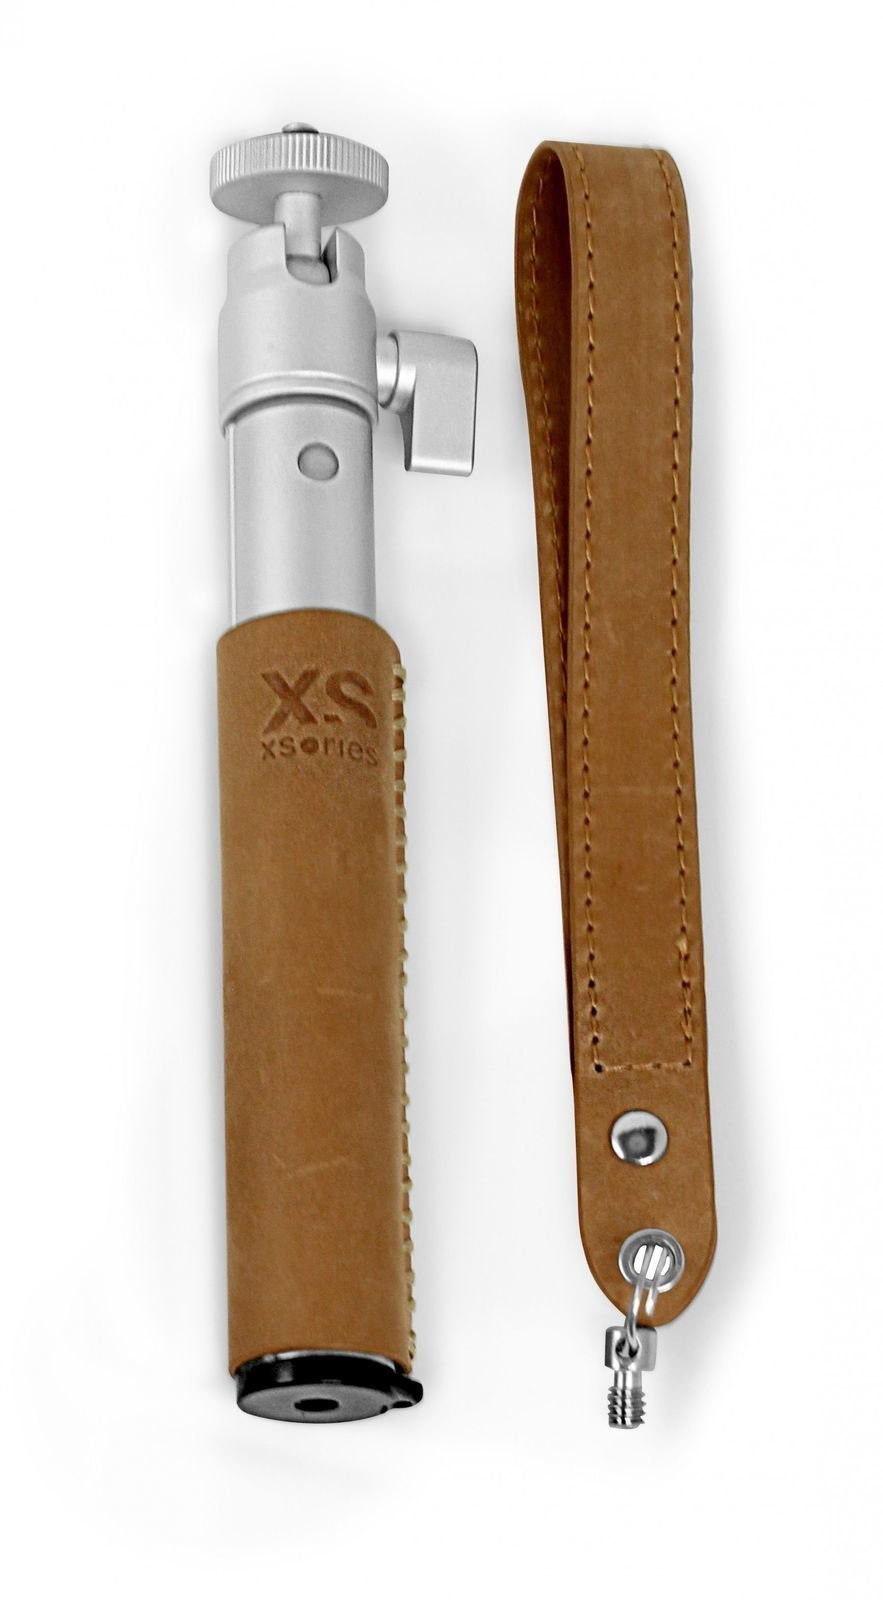 Príslušenstvo GoPro XSories U-Shot Deluxe Leather Silver